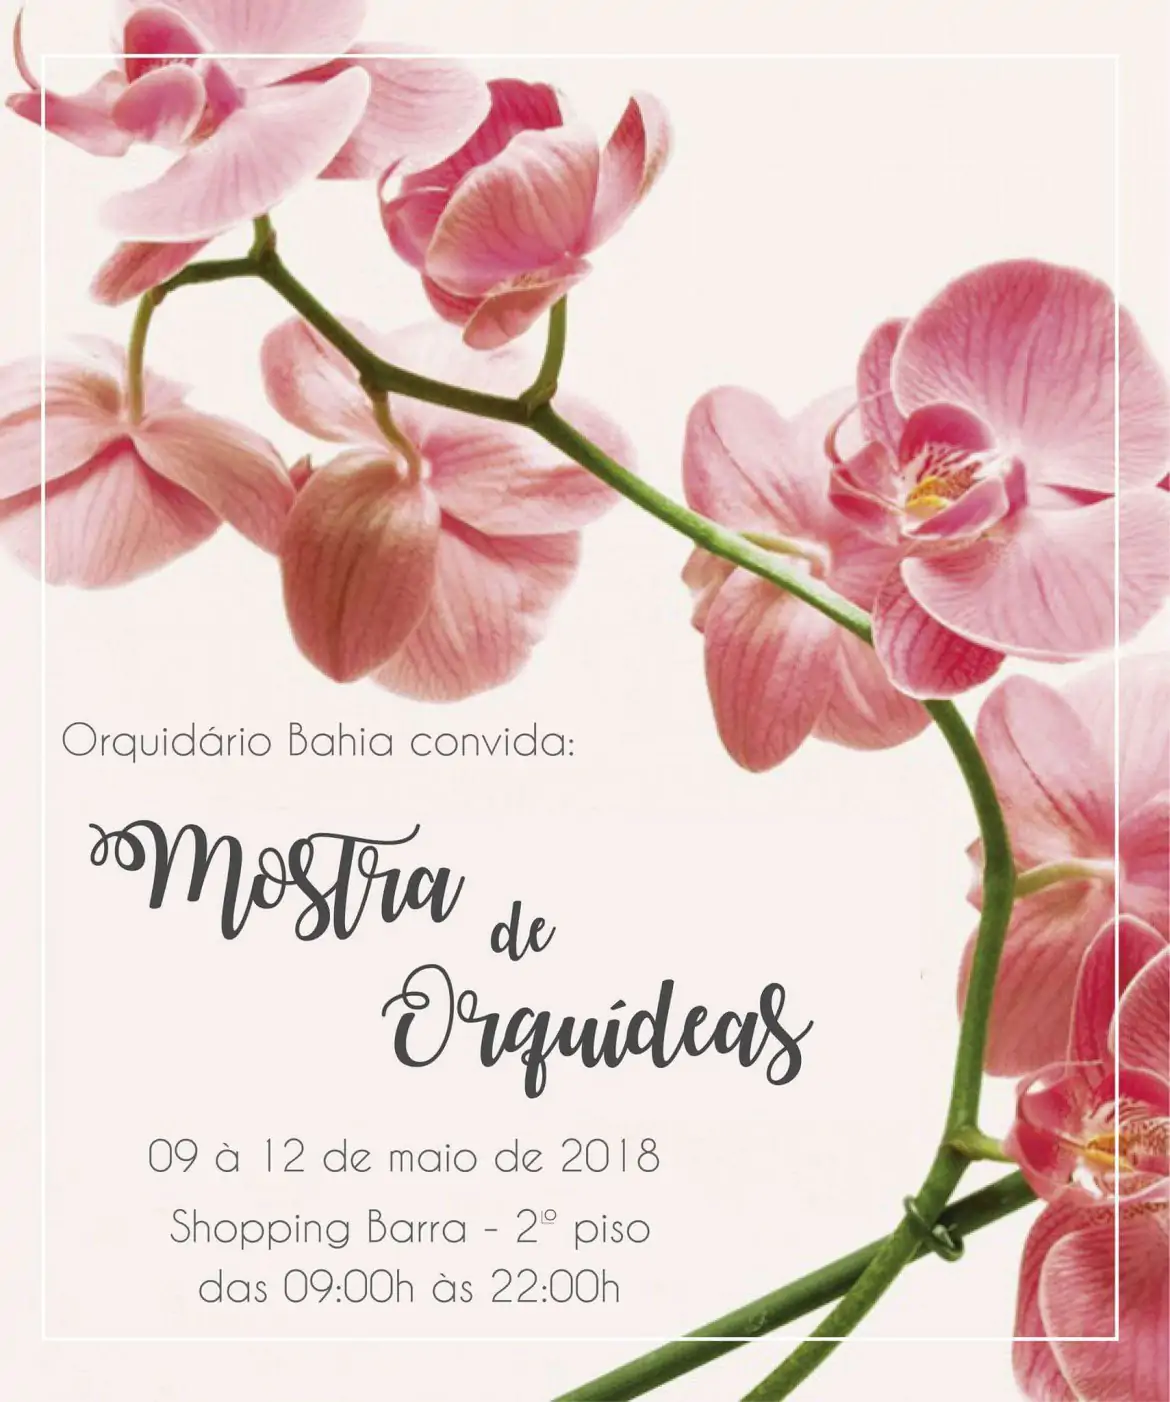 Festival de Orquídeas de Amargosa